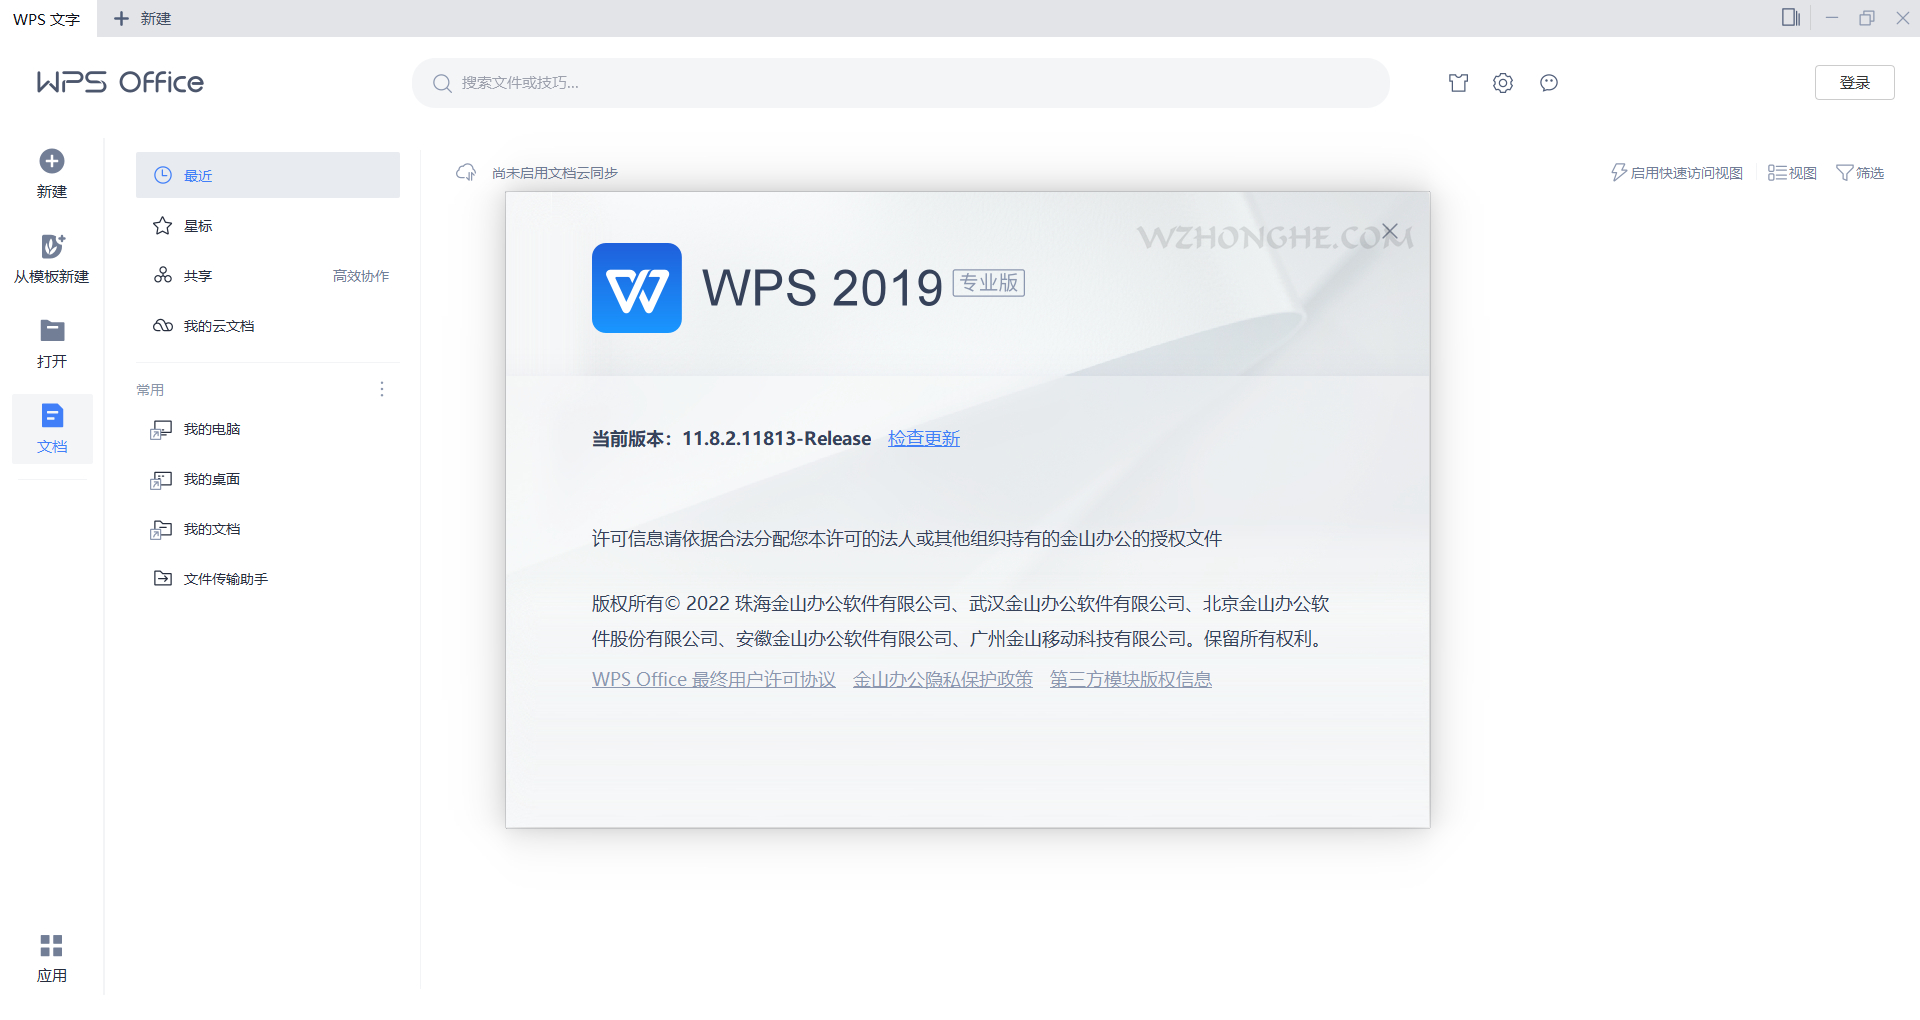 WPS2019专业增强版 - 无中和wzhonghe.com -2